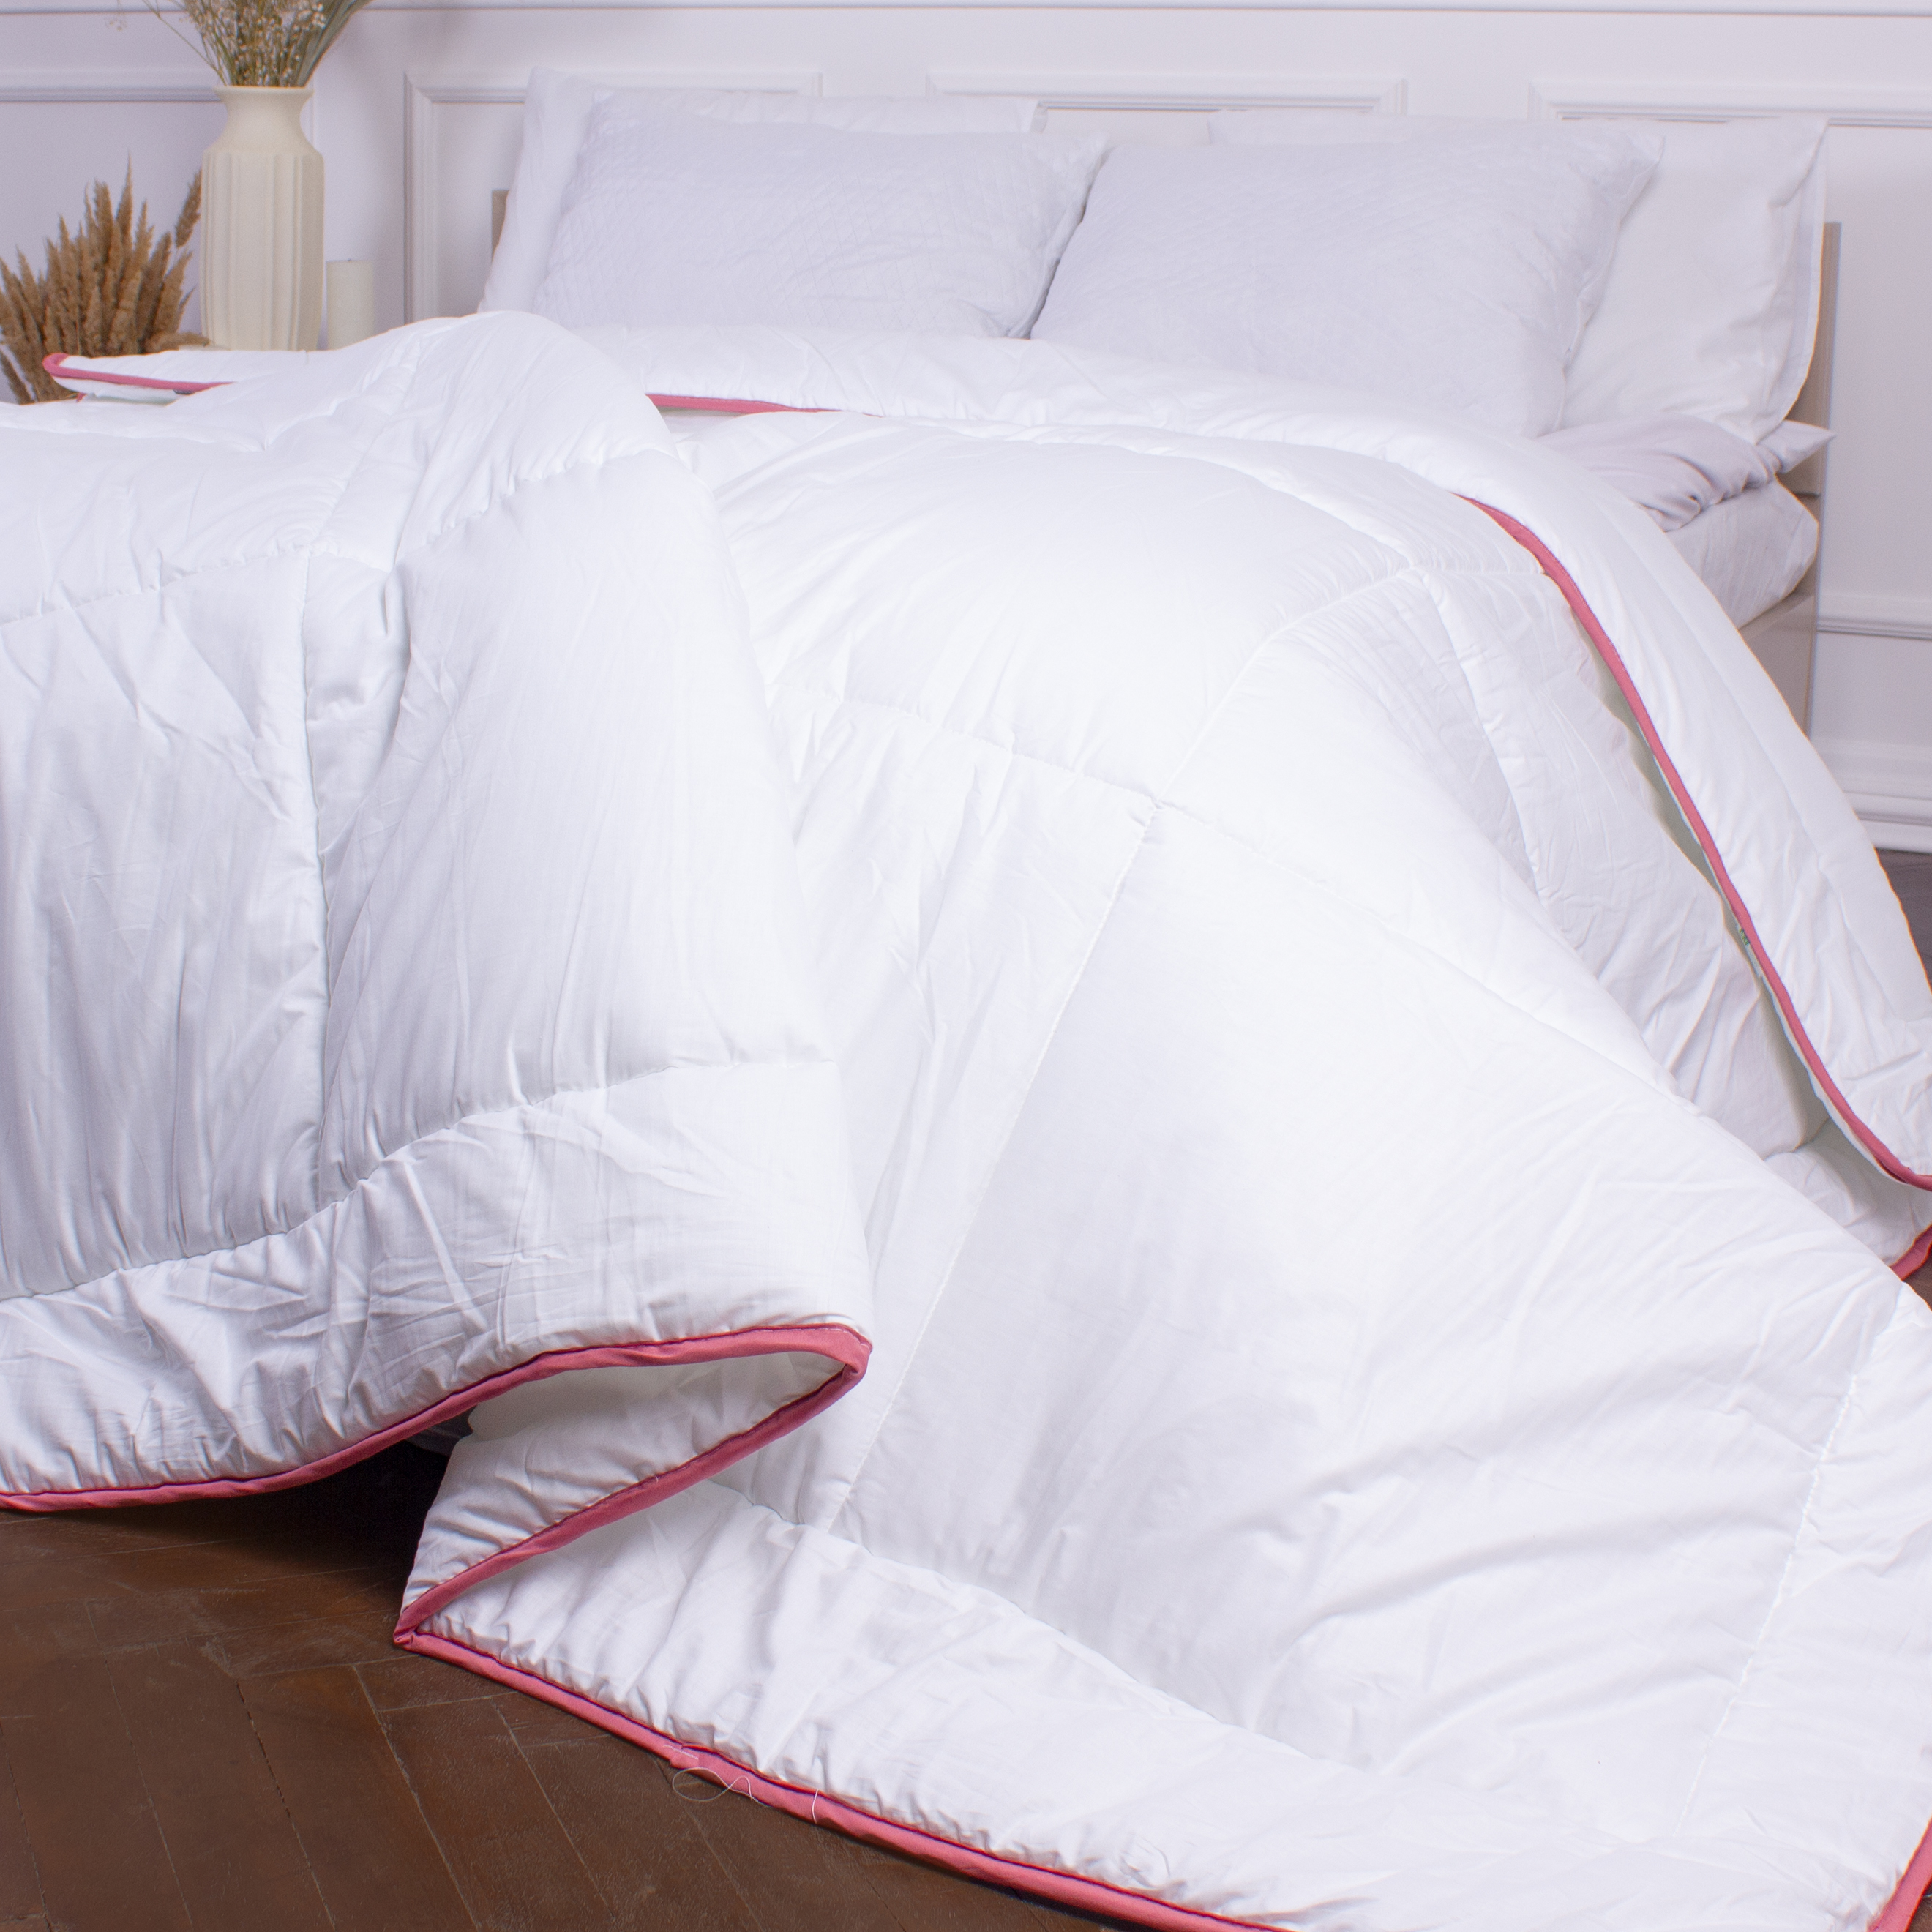 Одеяло шерстяное MirSon DeLuxe №030, зимнее, 140x205 см, белое - фото 4